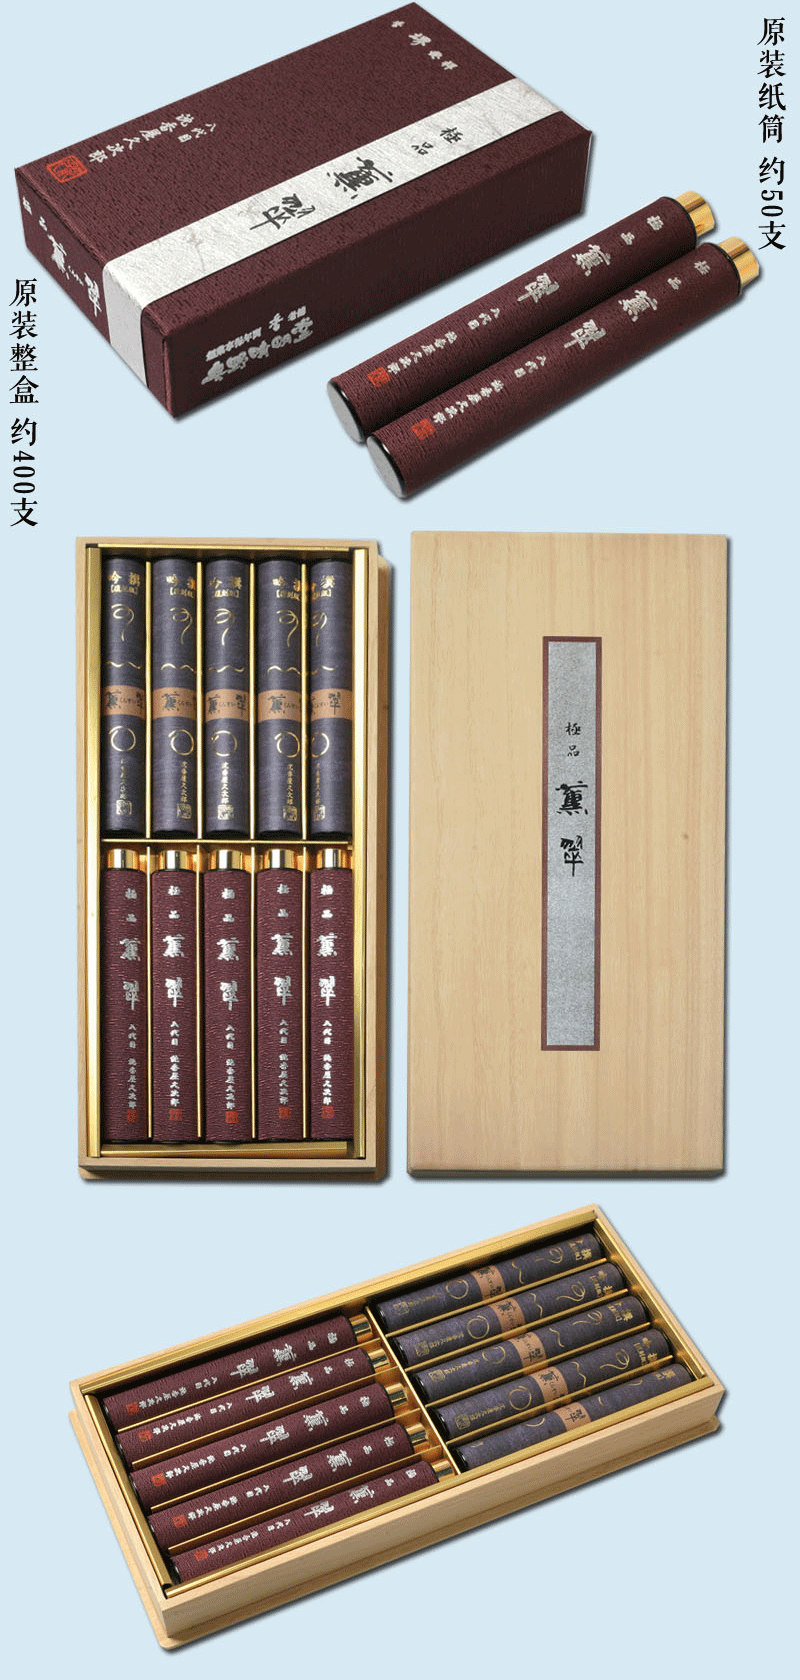 nhang thảo mộc Nhật Bản Okuno Ching Mingtang hun khói cui tên loạt hương nhang xanh nhang hộp ban đầu của hương trong nhà mới - Sản phẩm hương liệu vòng tay kỳ nam